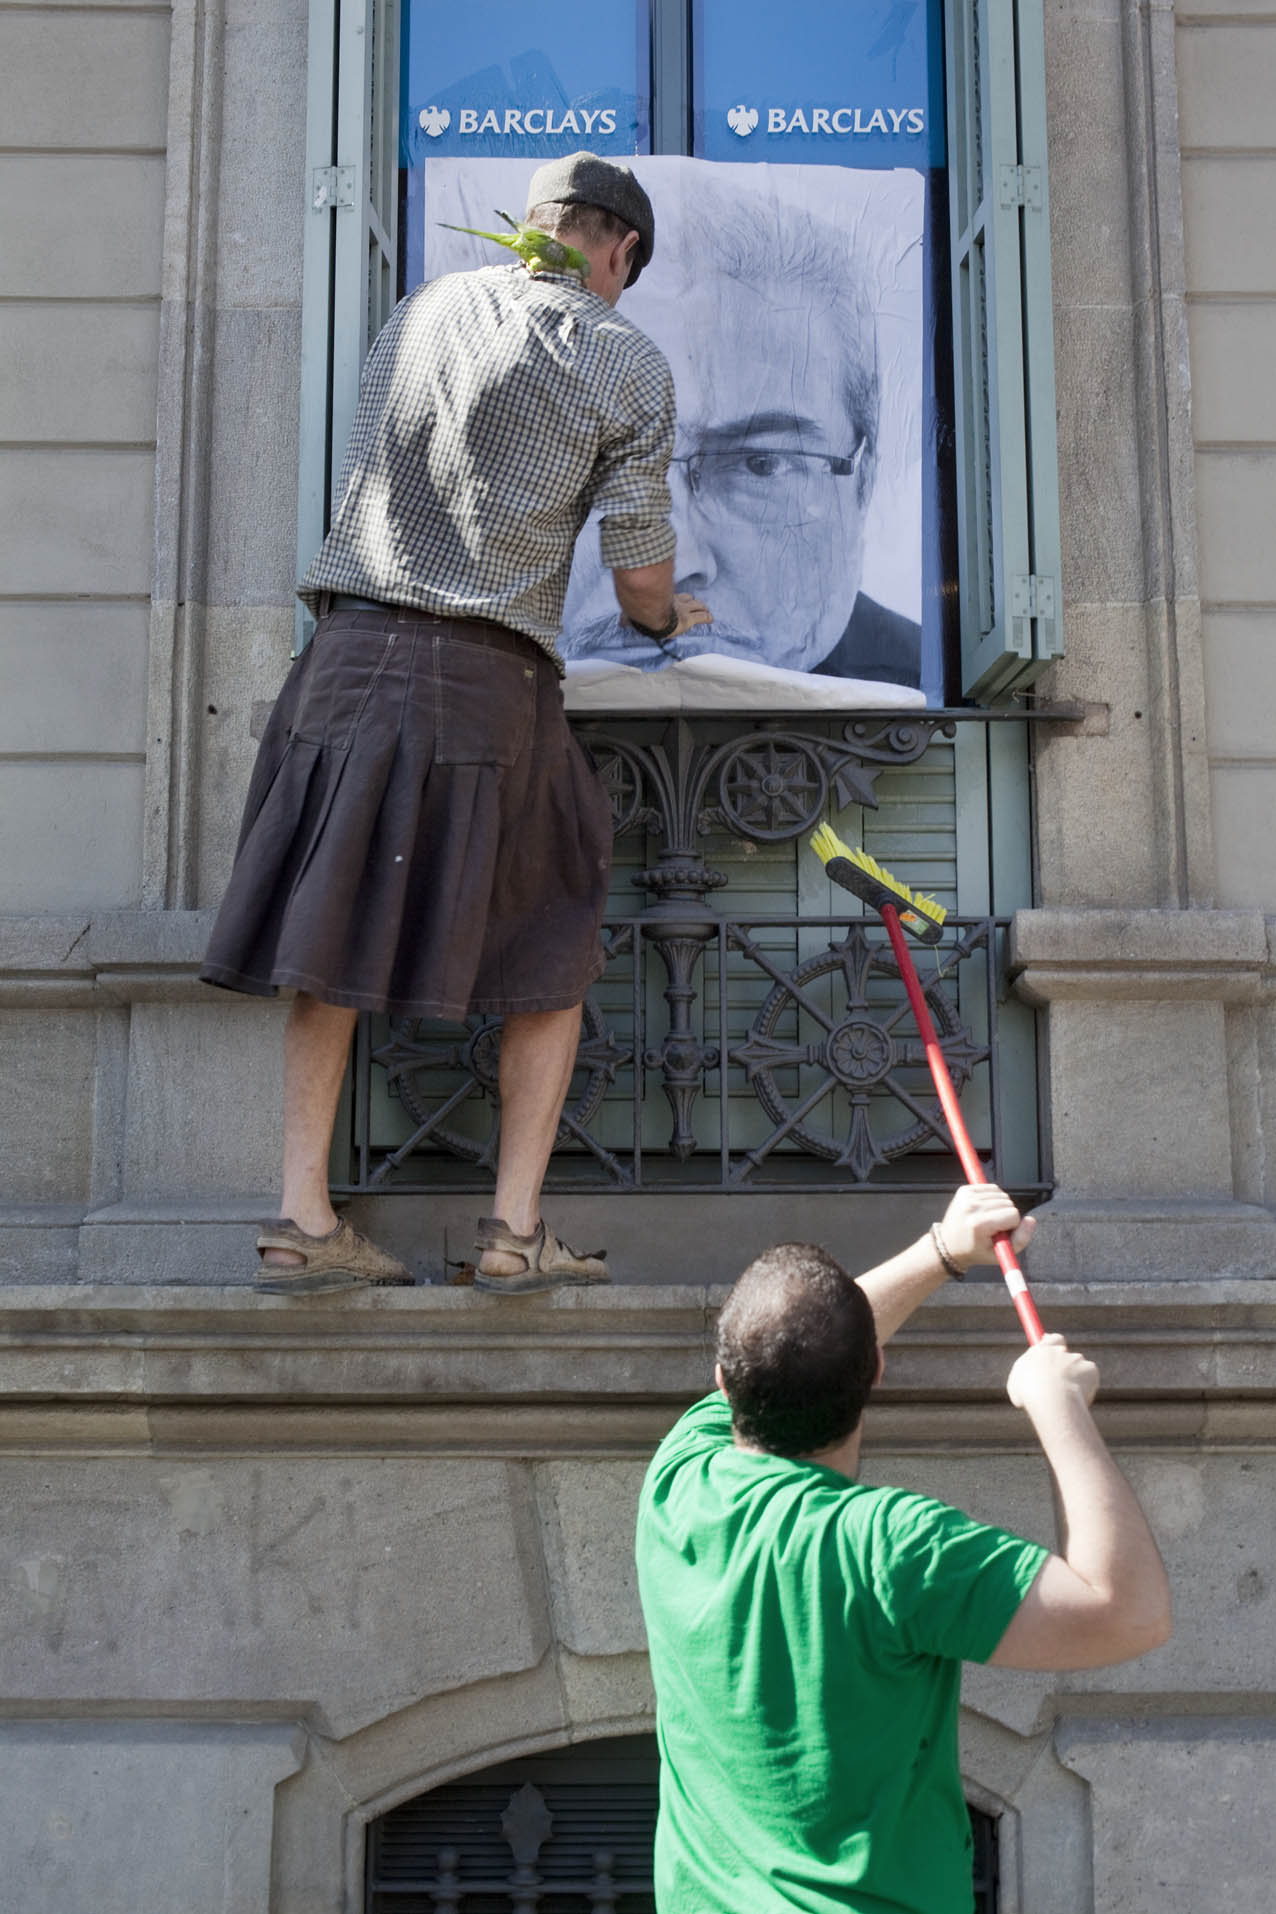 Protestaktion der PAH gegen die Barclays Bank, Spanien Juli 2012, Foto:  orianomada/flickr